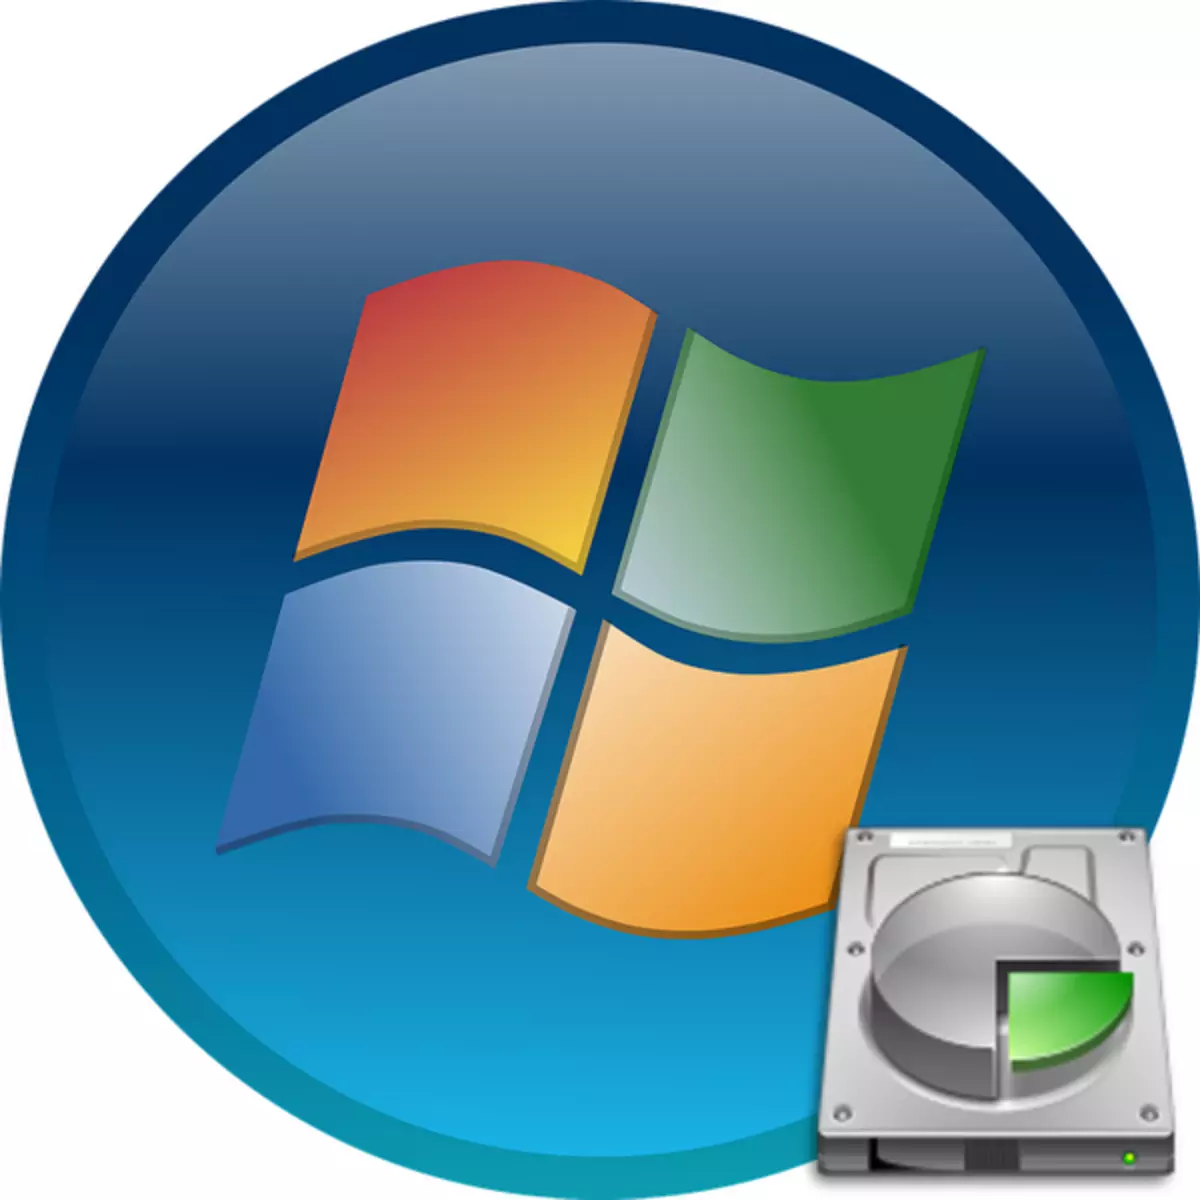 Πώς να αφαιρέσετε την ενότητα "Αποθεματοποιημένο σύστημα" στα Windows 7